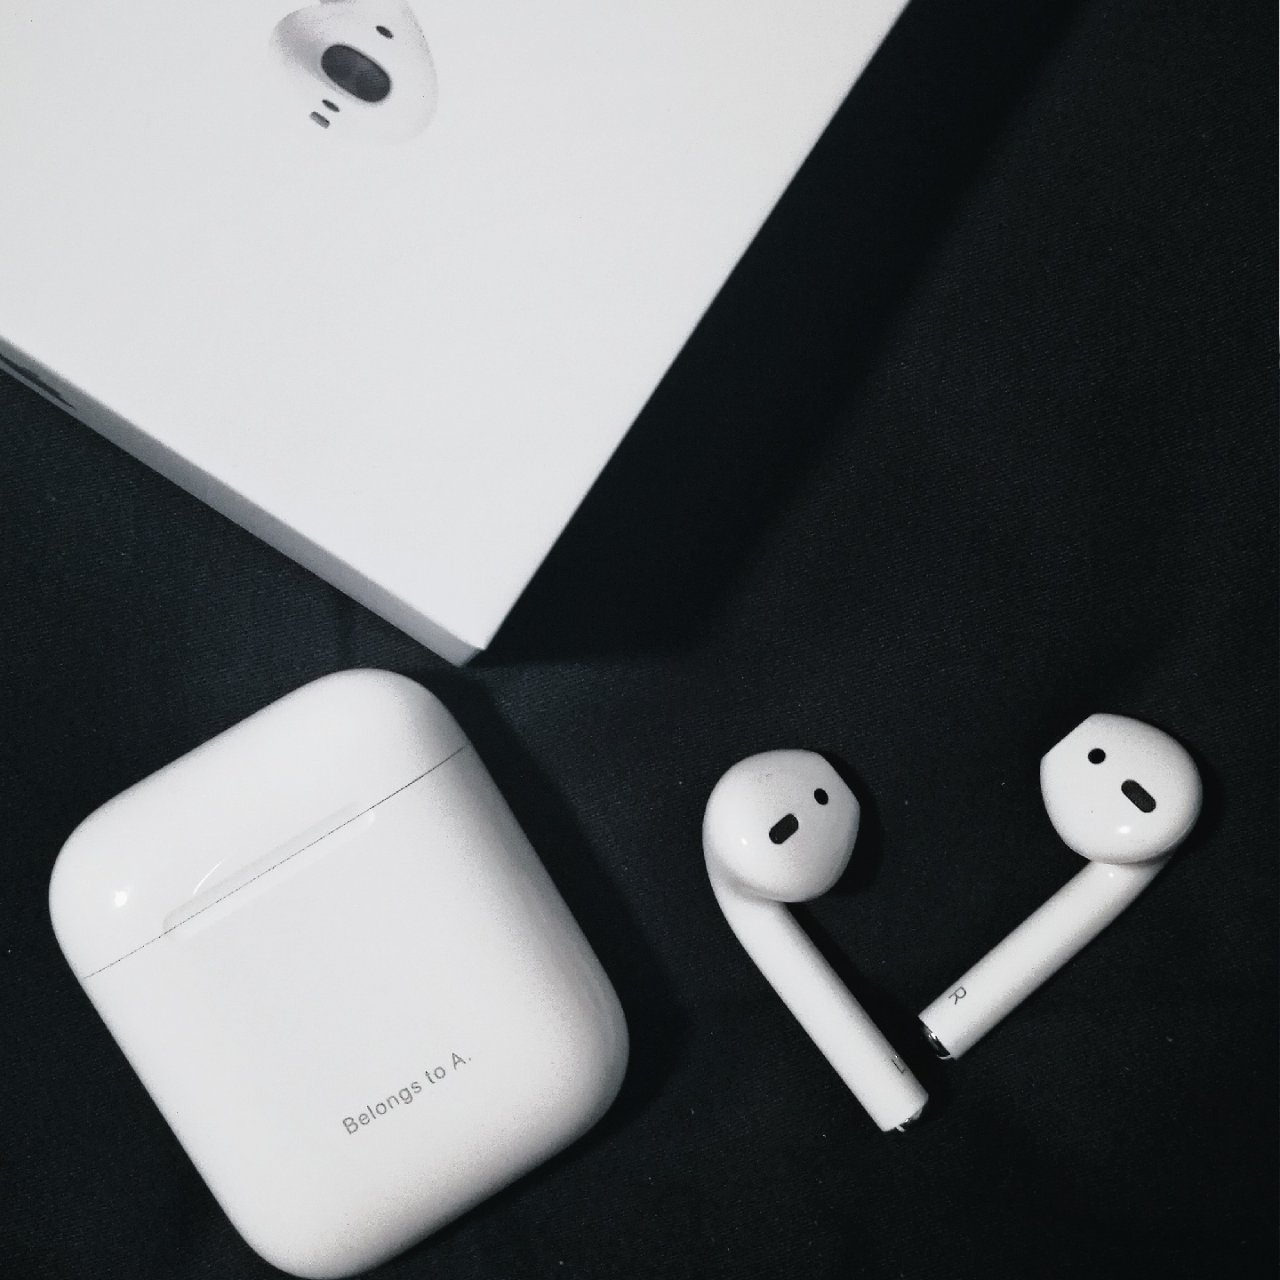 5月晒货挑战,Apple 苹果,AirPods 2,不打折也买,无线耳机,蓝牙耳机,160美元